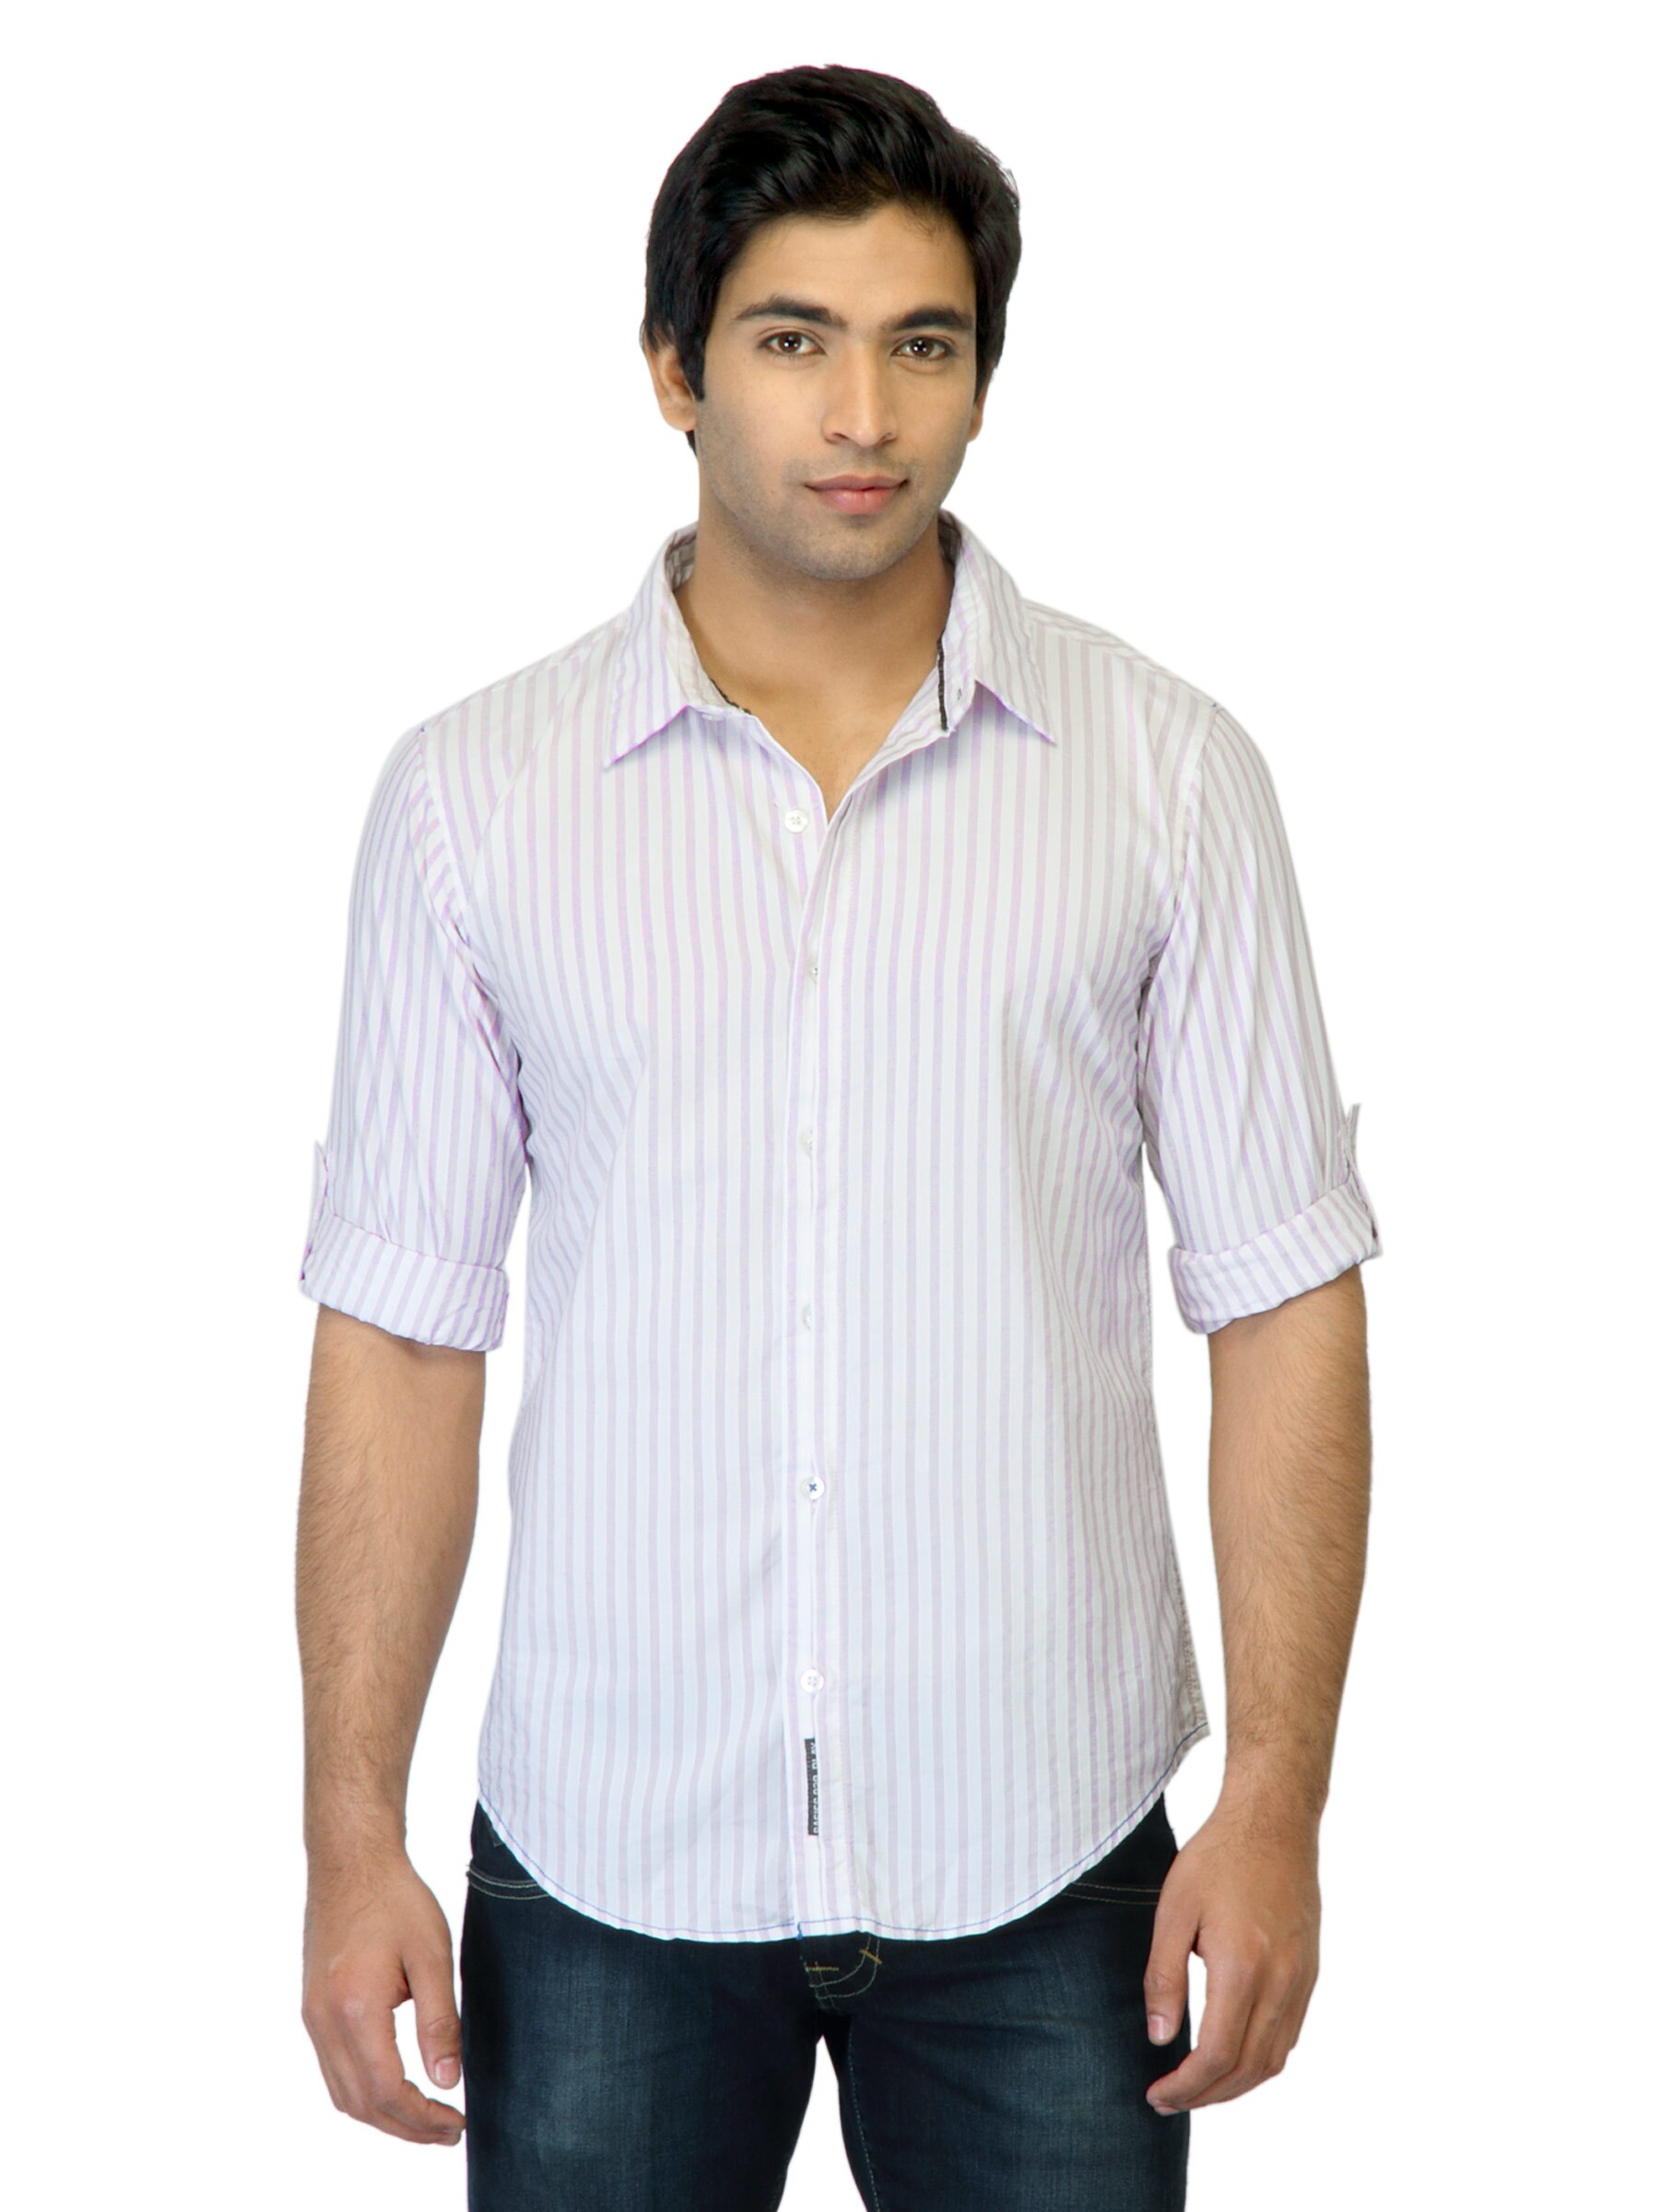 Basics Men White Striped Shirt